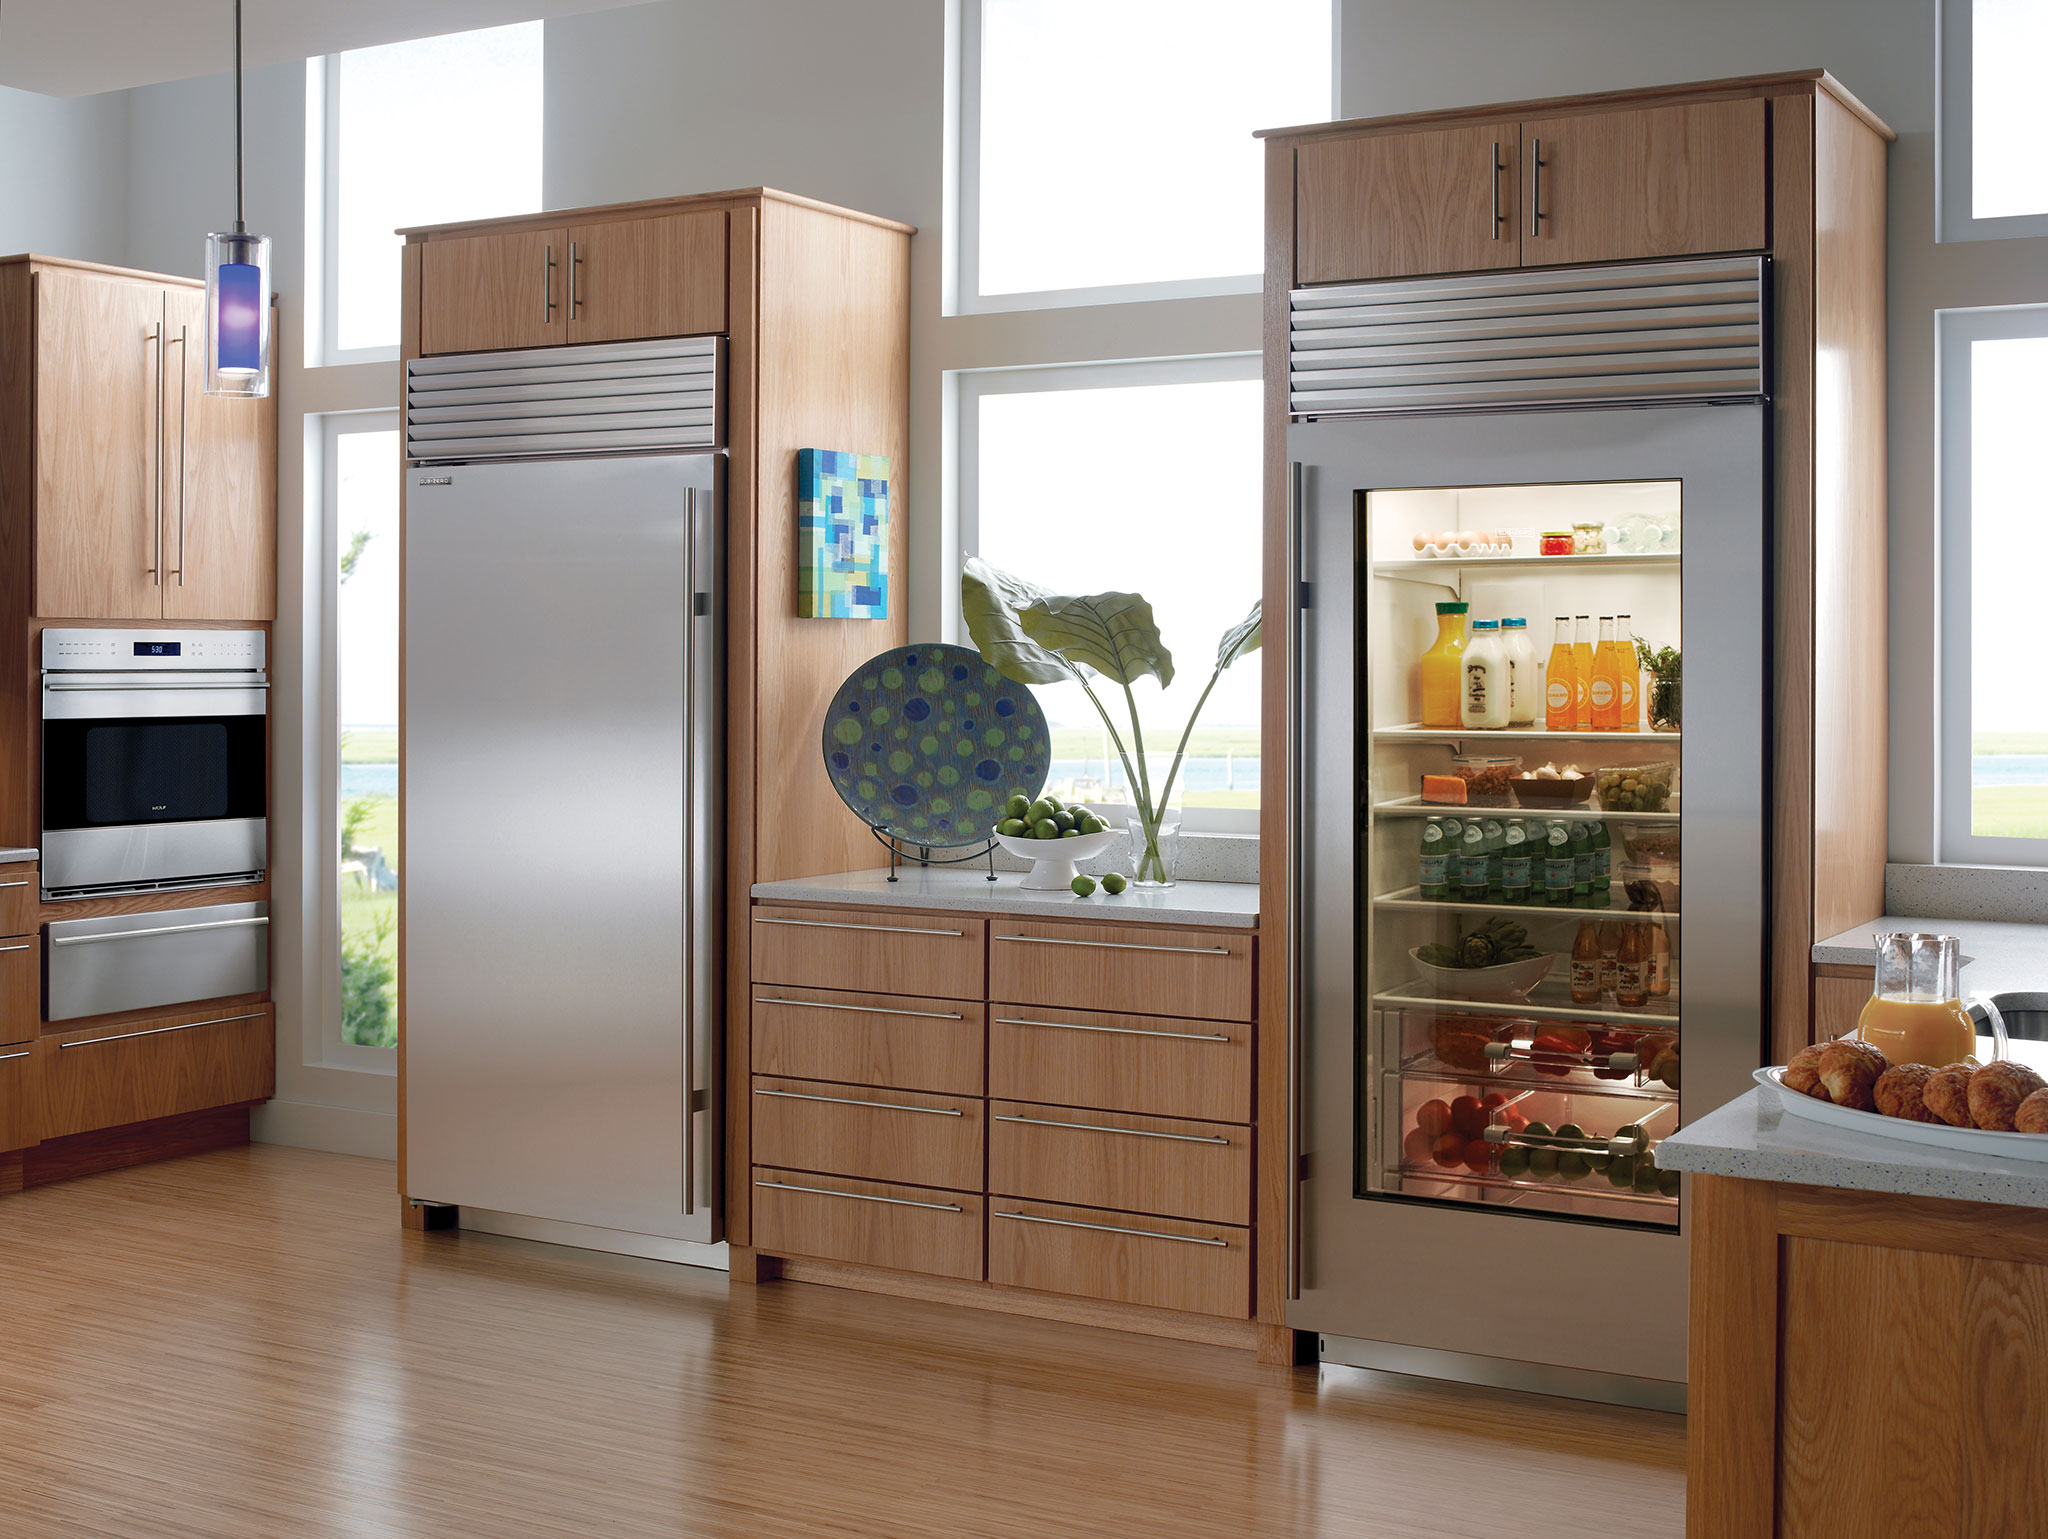 10 Best Refrigerator Glass Door for 2023